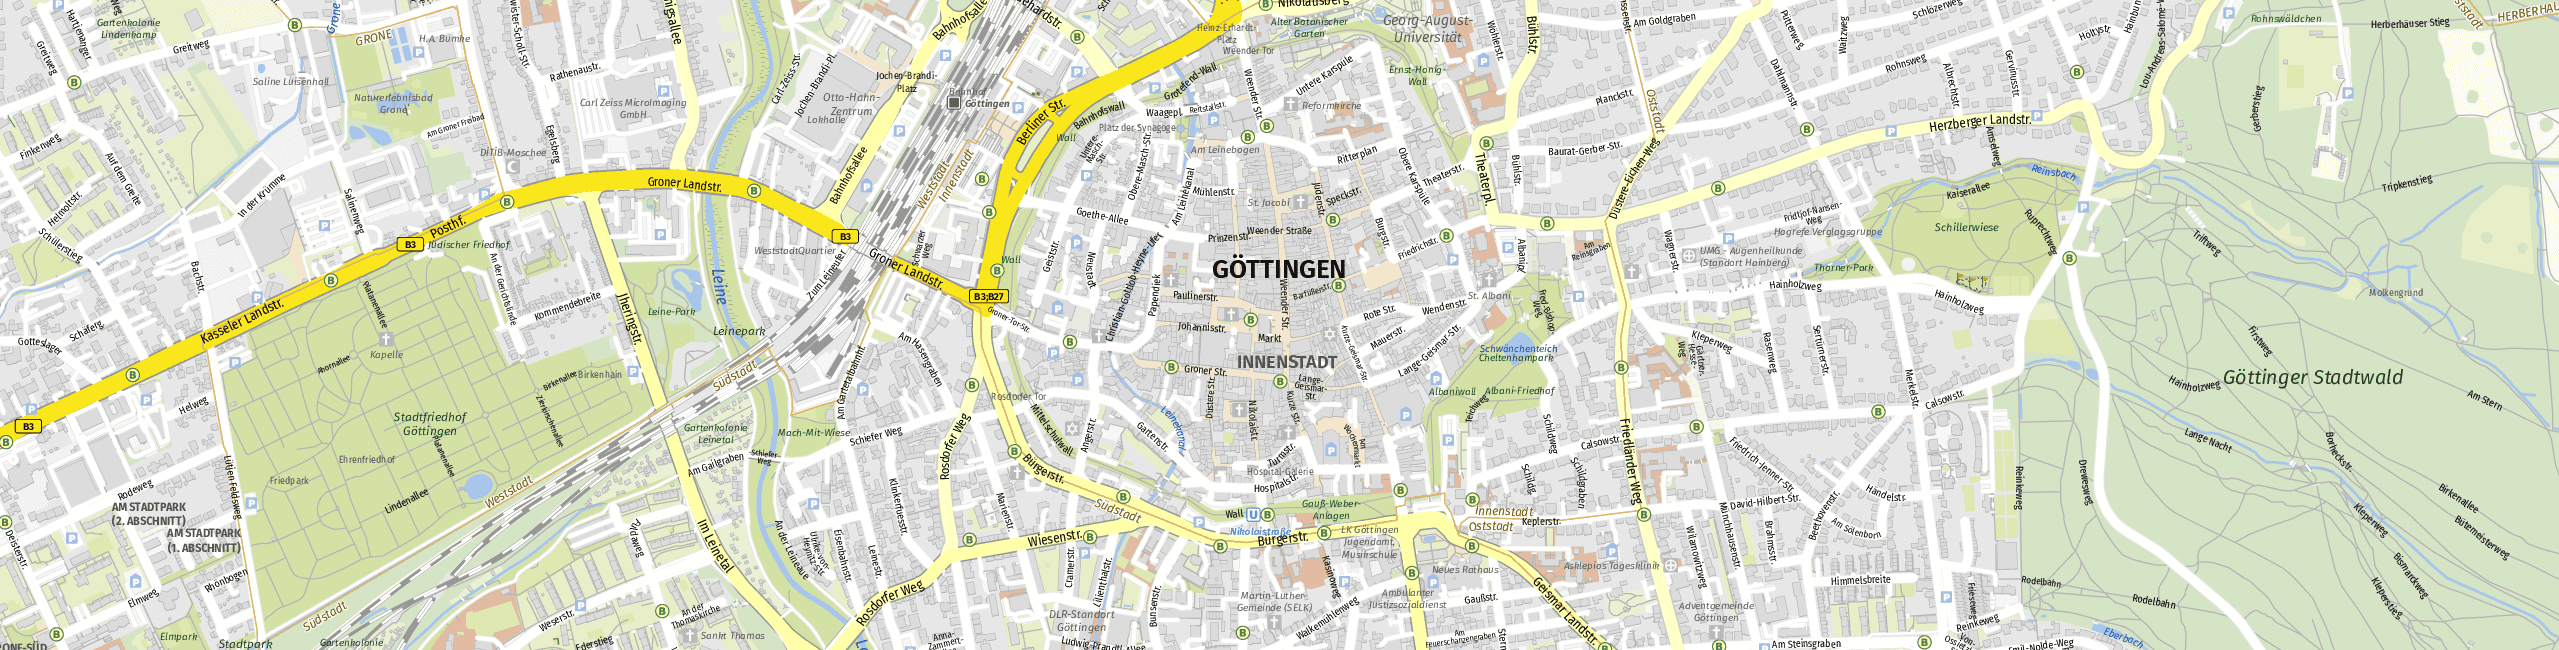 Stadtplan Göttingen zum Downloaden.